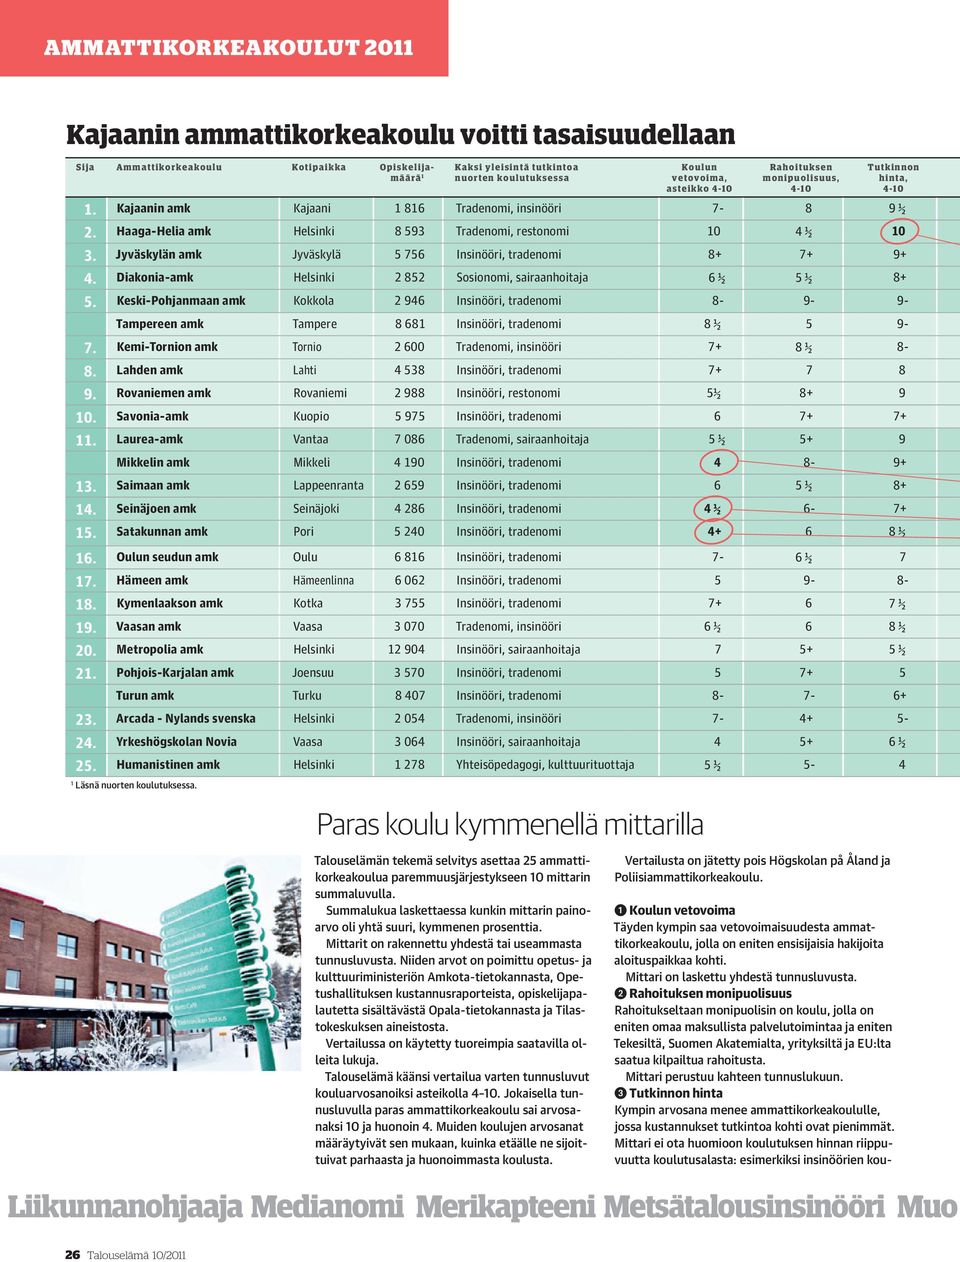 Jyväskylän amk Jyväskylä 5 756 Insinööri, tradenomi 8+ 7+ 9+ 4. Diakonia-amk Helsinki 2 852 Sosionomi, sairaanhoitaja 6 ½ 5 ½ 8+ 5.